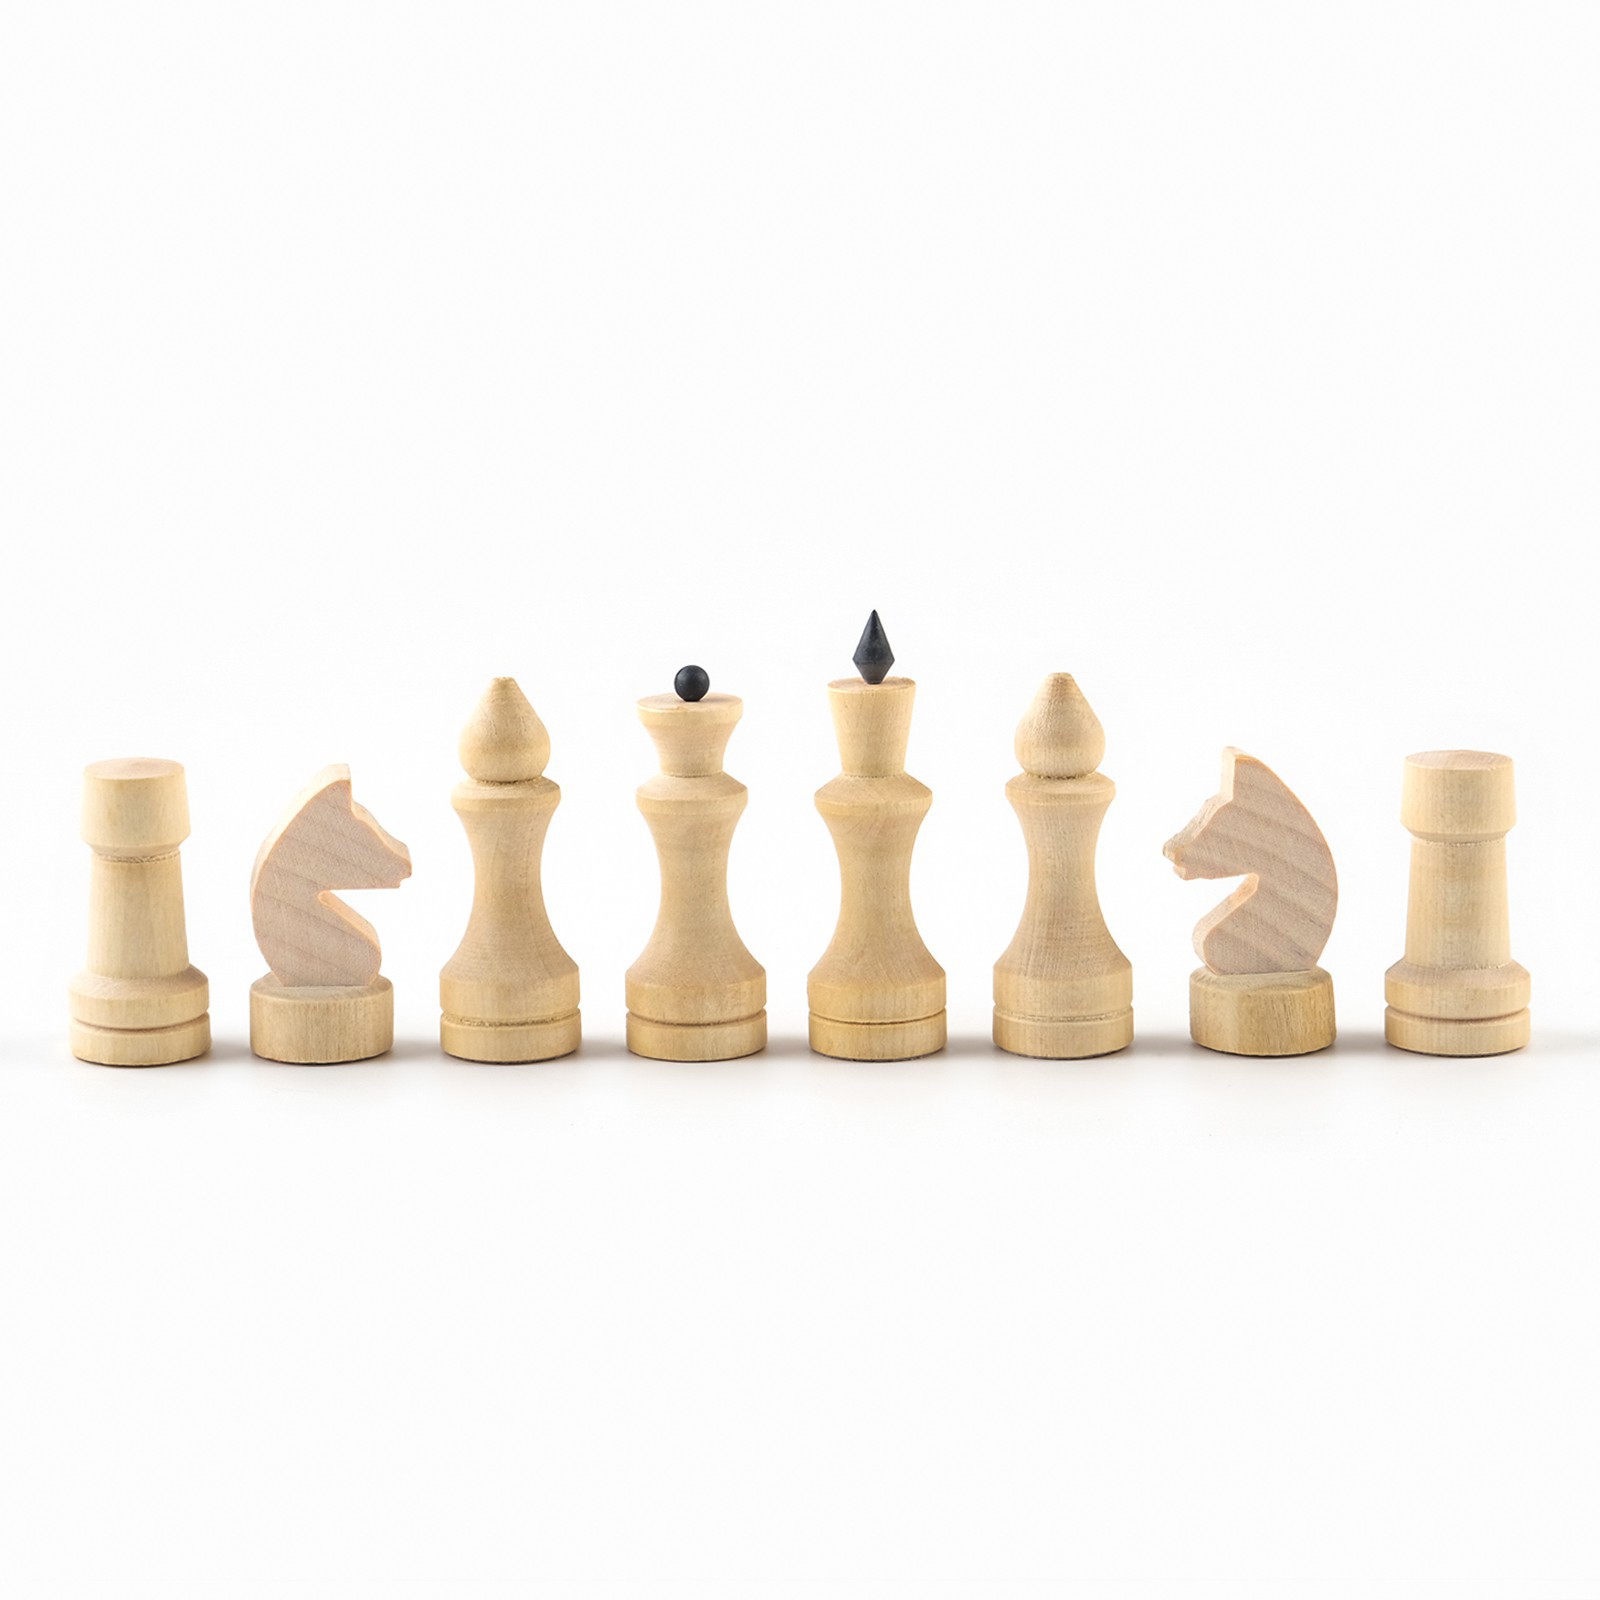 Шахматные фигуры Sima-Land обиходные король h 7 см d 2 4 см пешка h 4 4 см d 2 4 см - фото 9